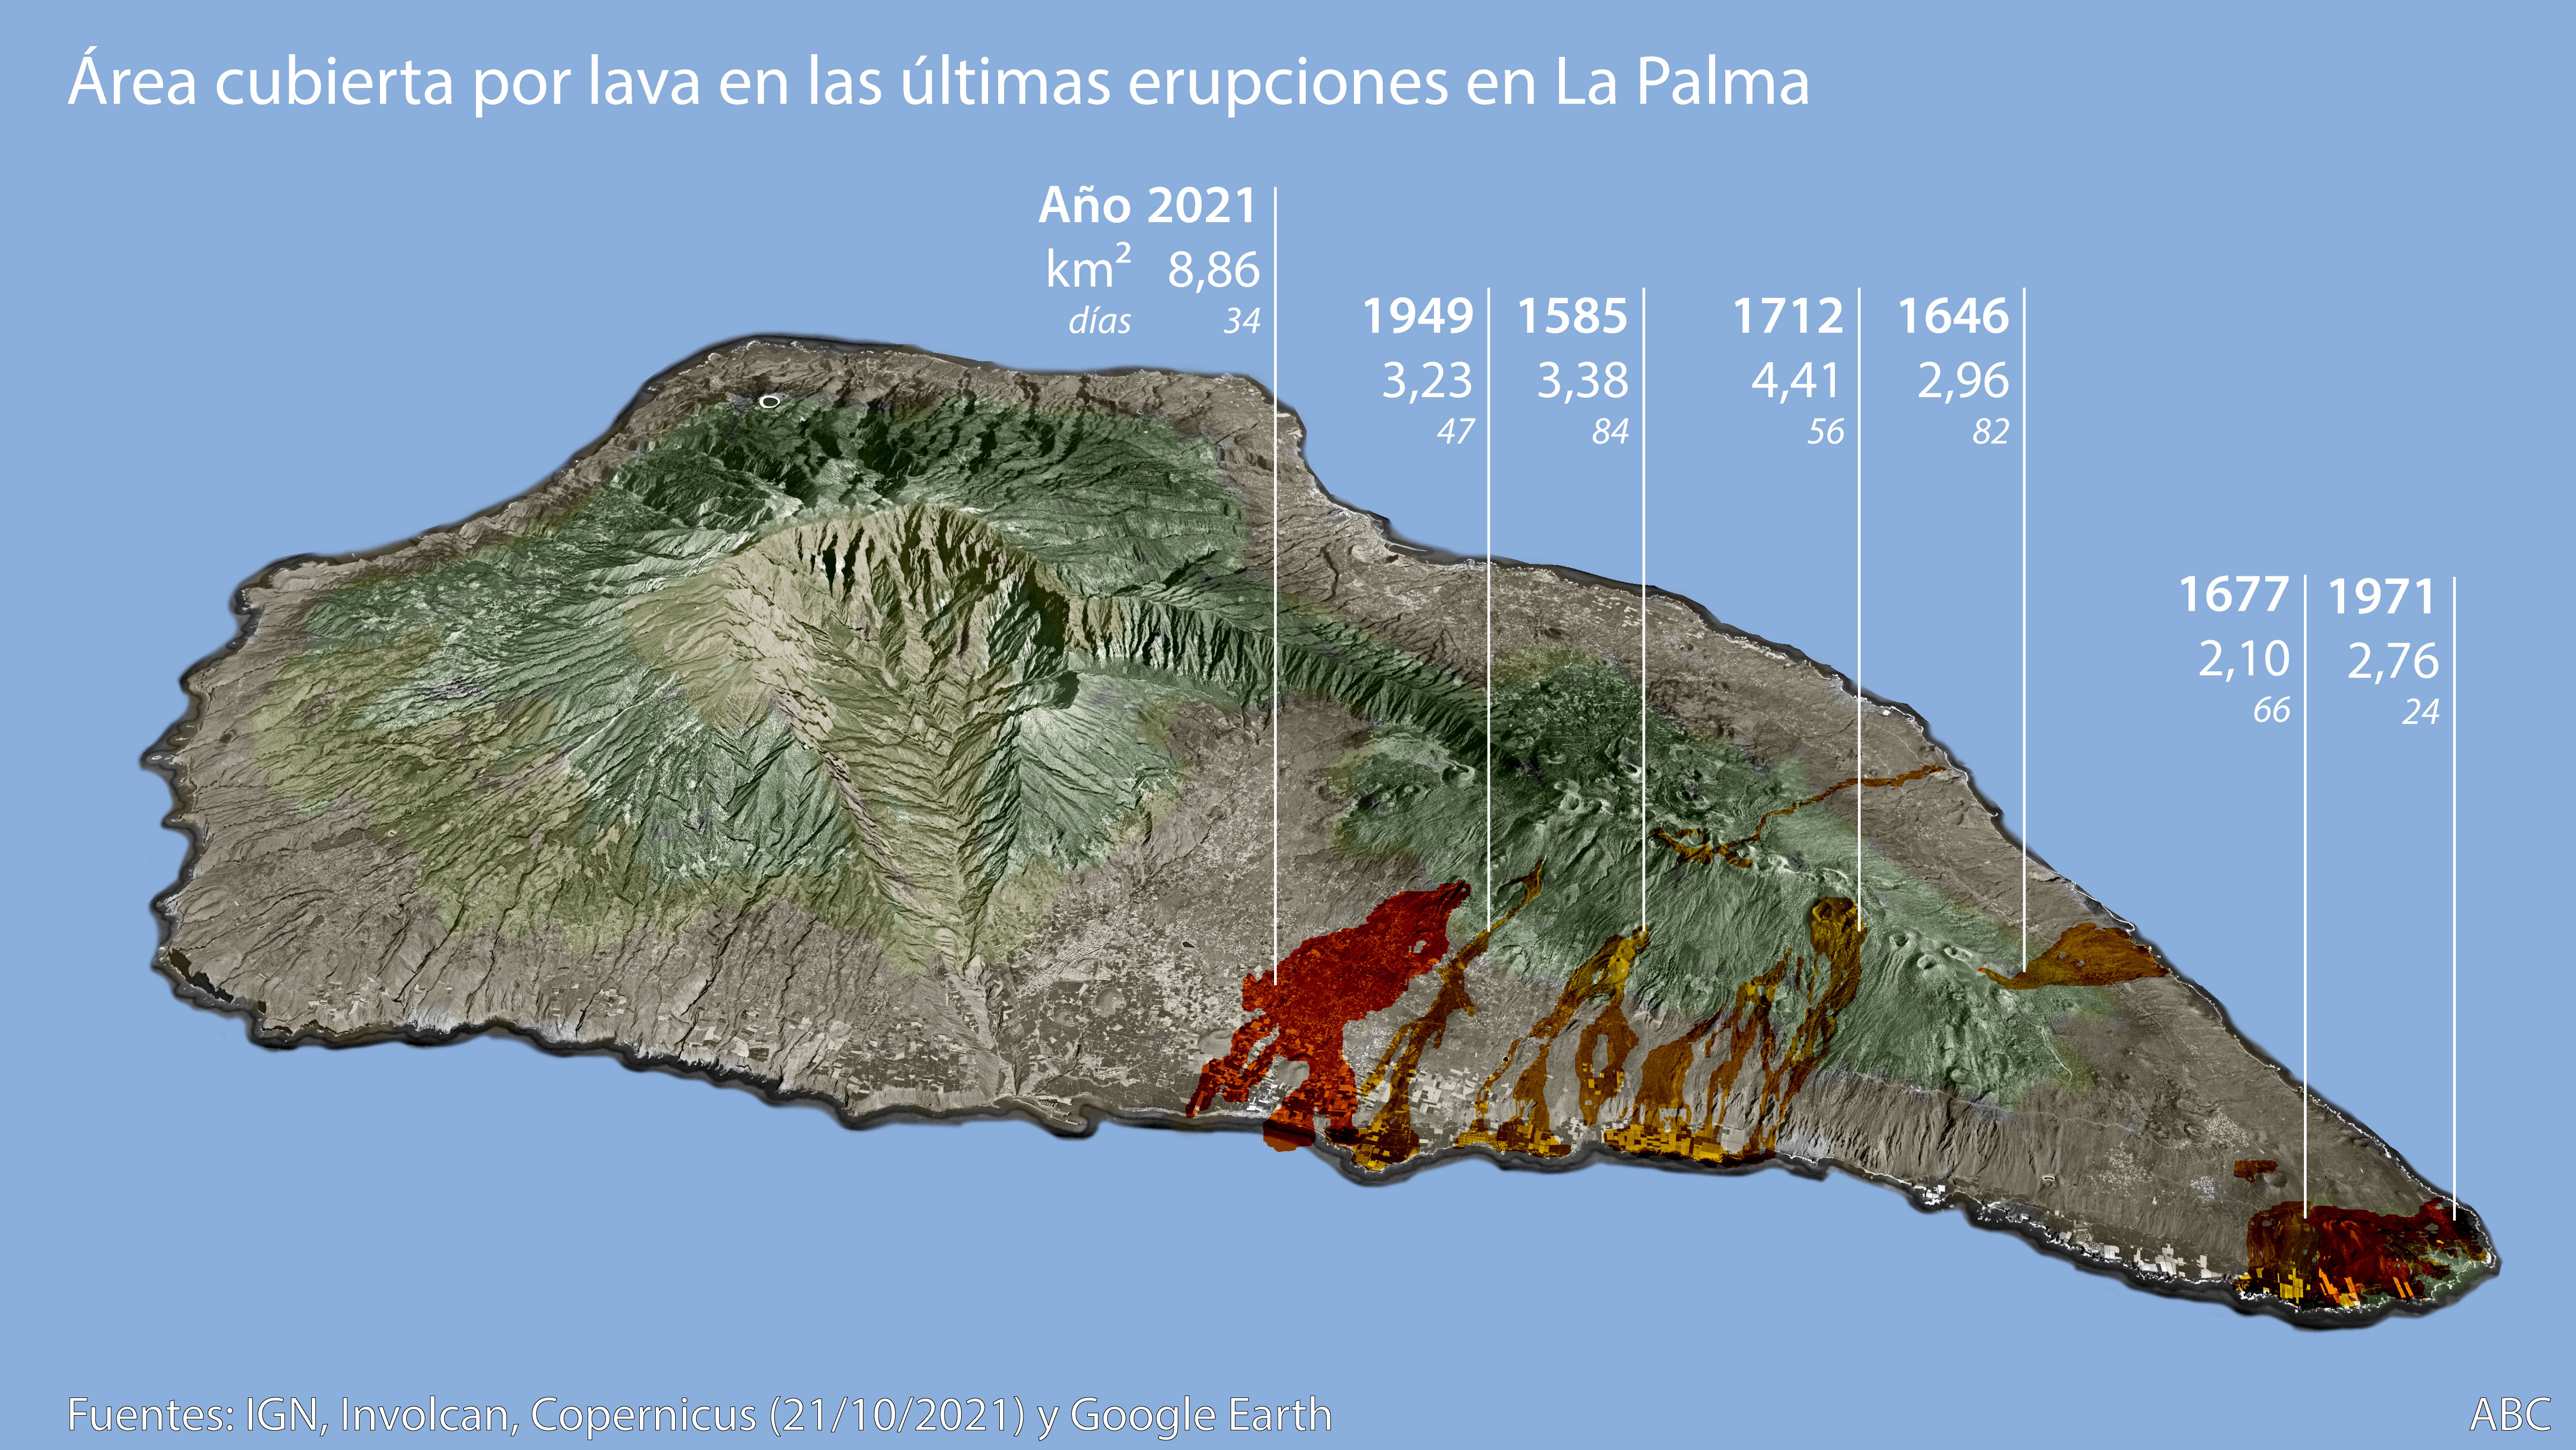 El volcán de La Palma, el más destructivo de sus erupciones históricas